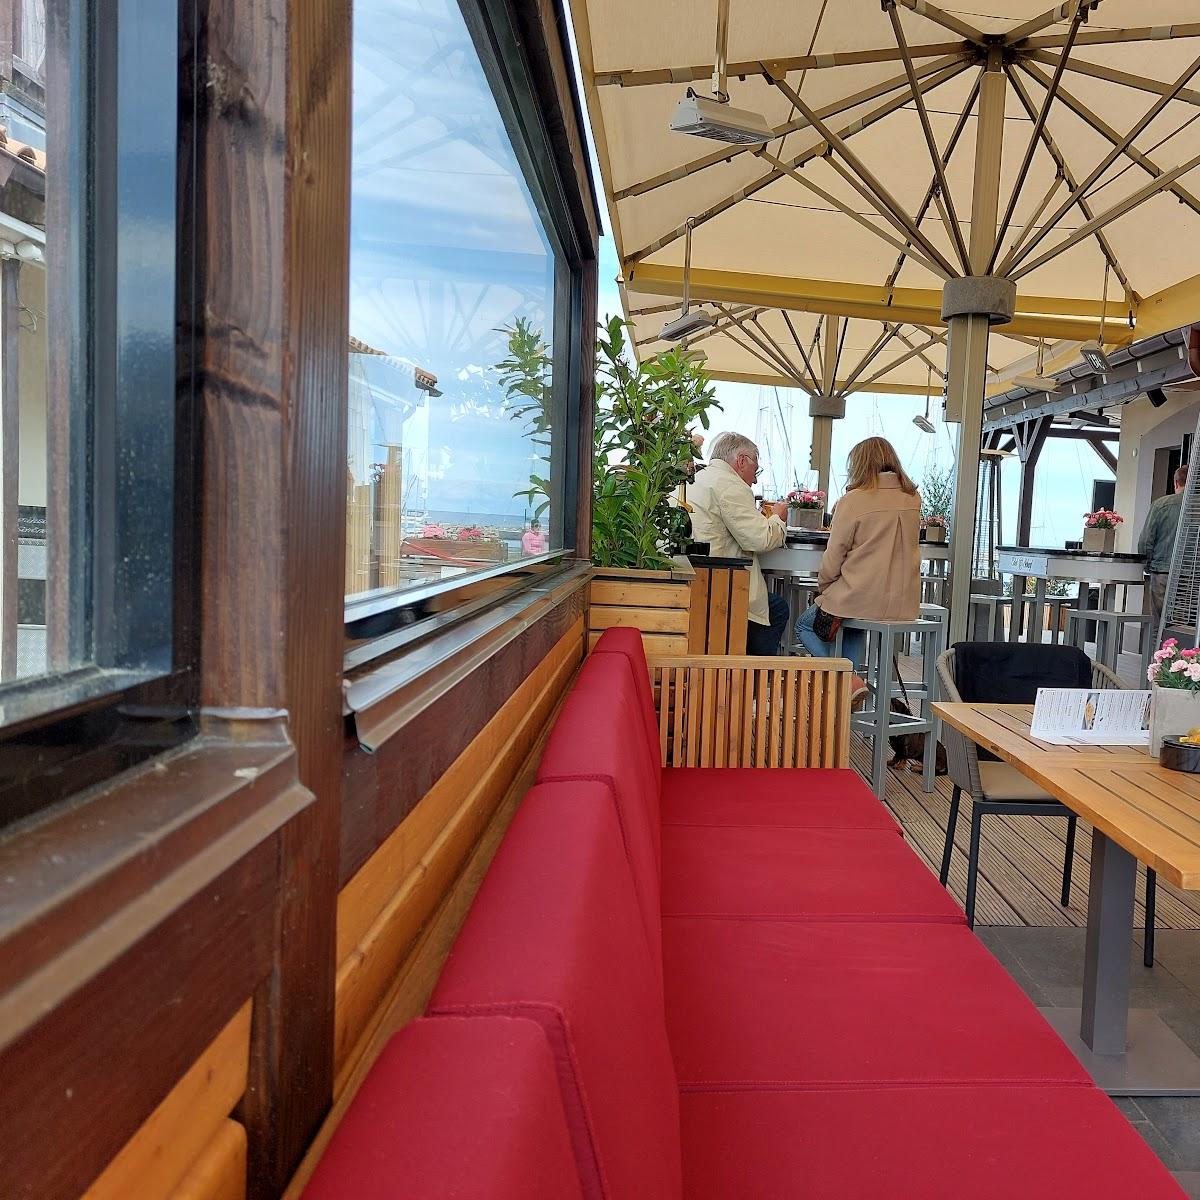 Restaurant "Edel & Scharf Am Bootshafen" in Kühlungsborn